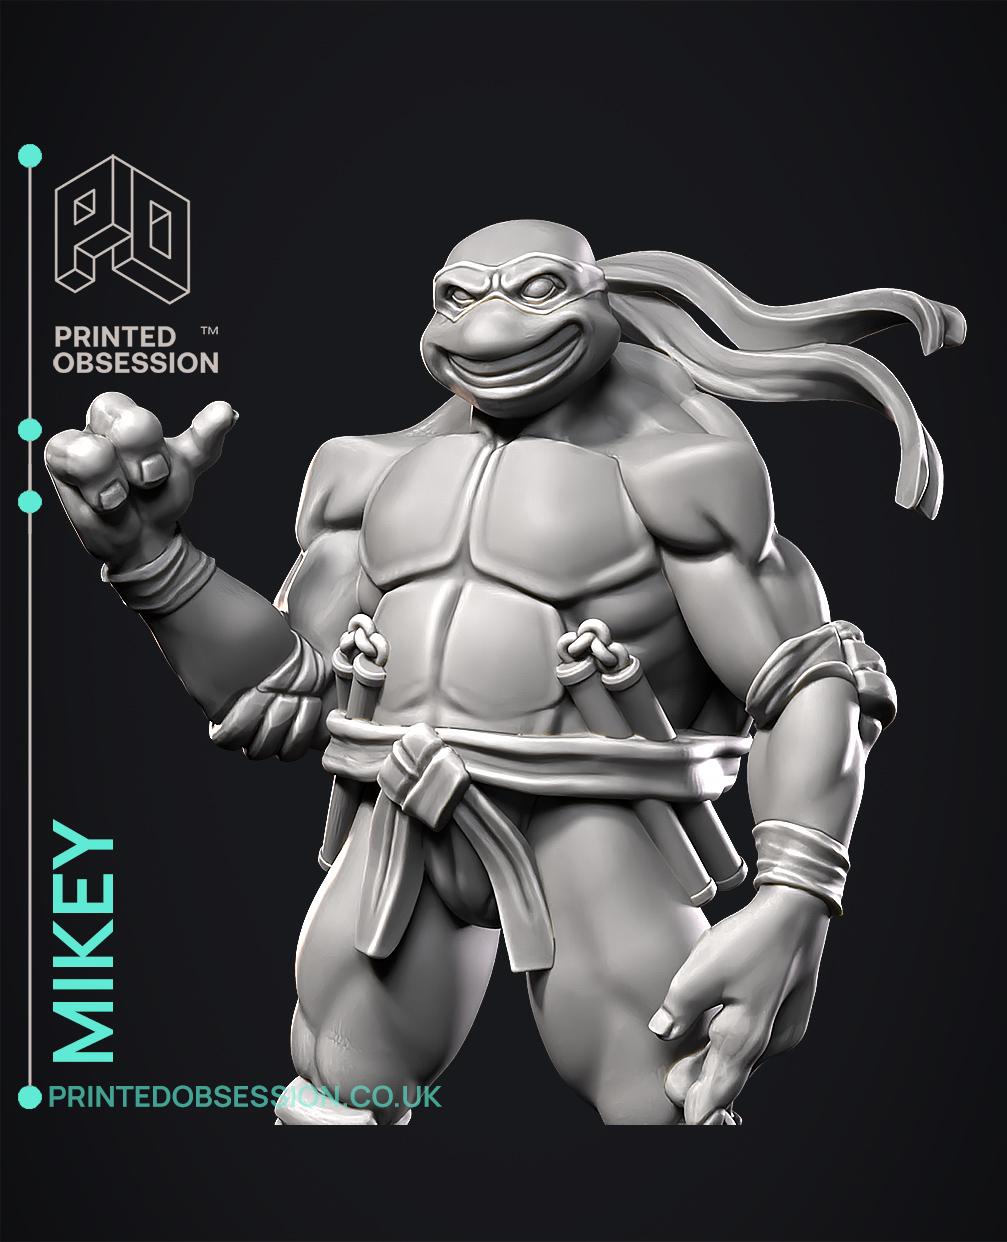 Mikey - TMNT - Fan Art 3d model